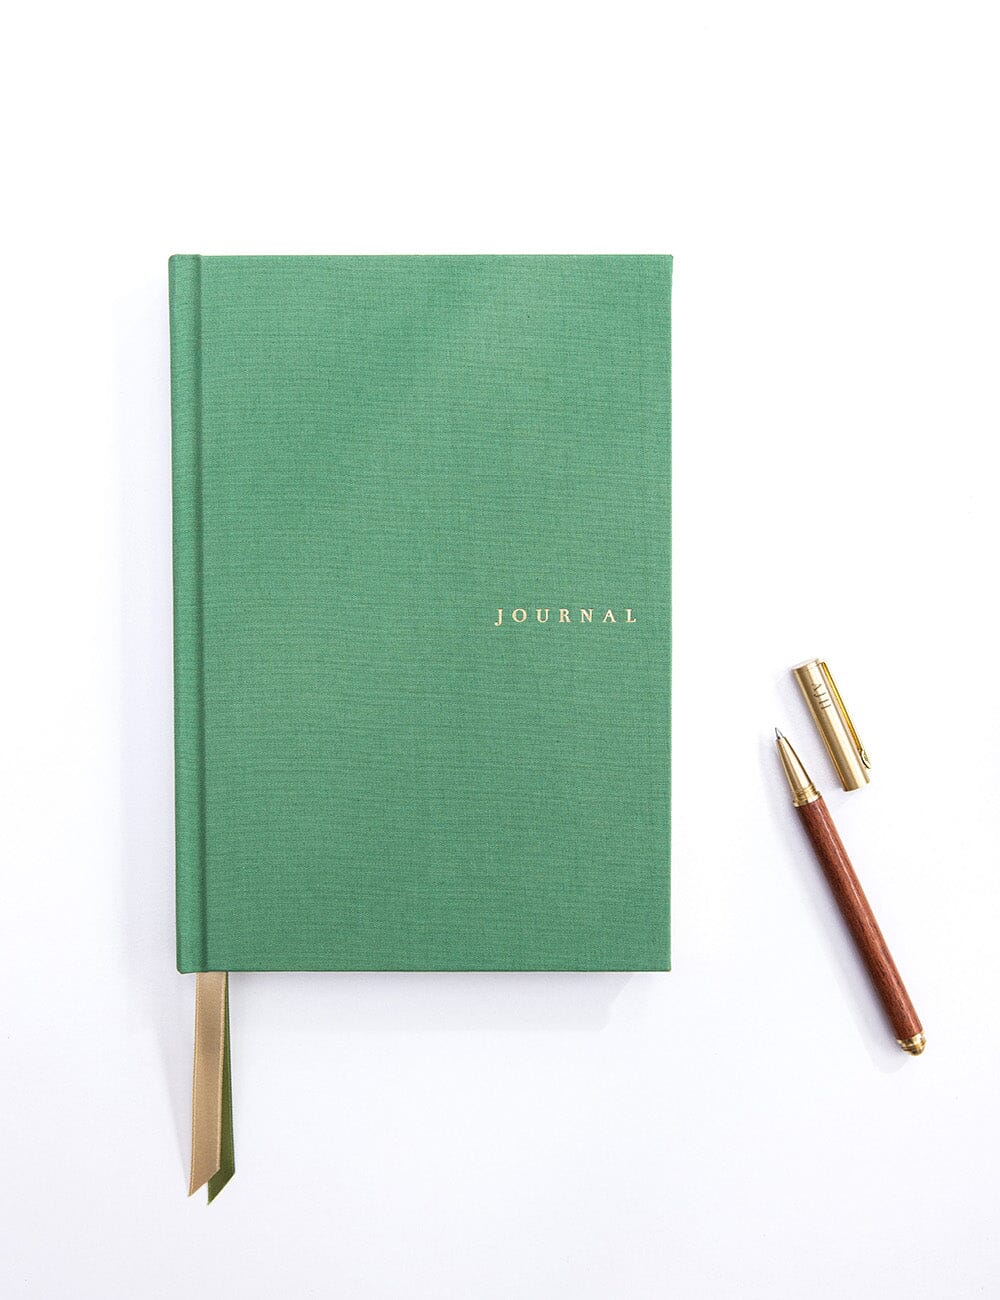 Journal en lin - Vert Fougère - Bespoke Letterpress